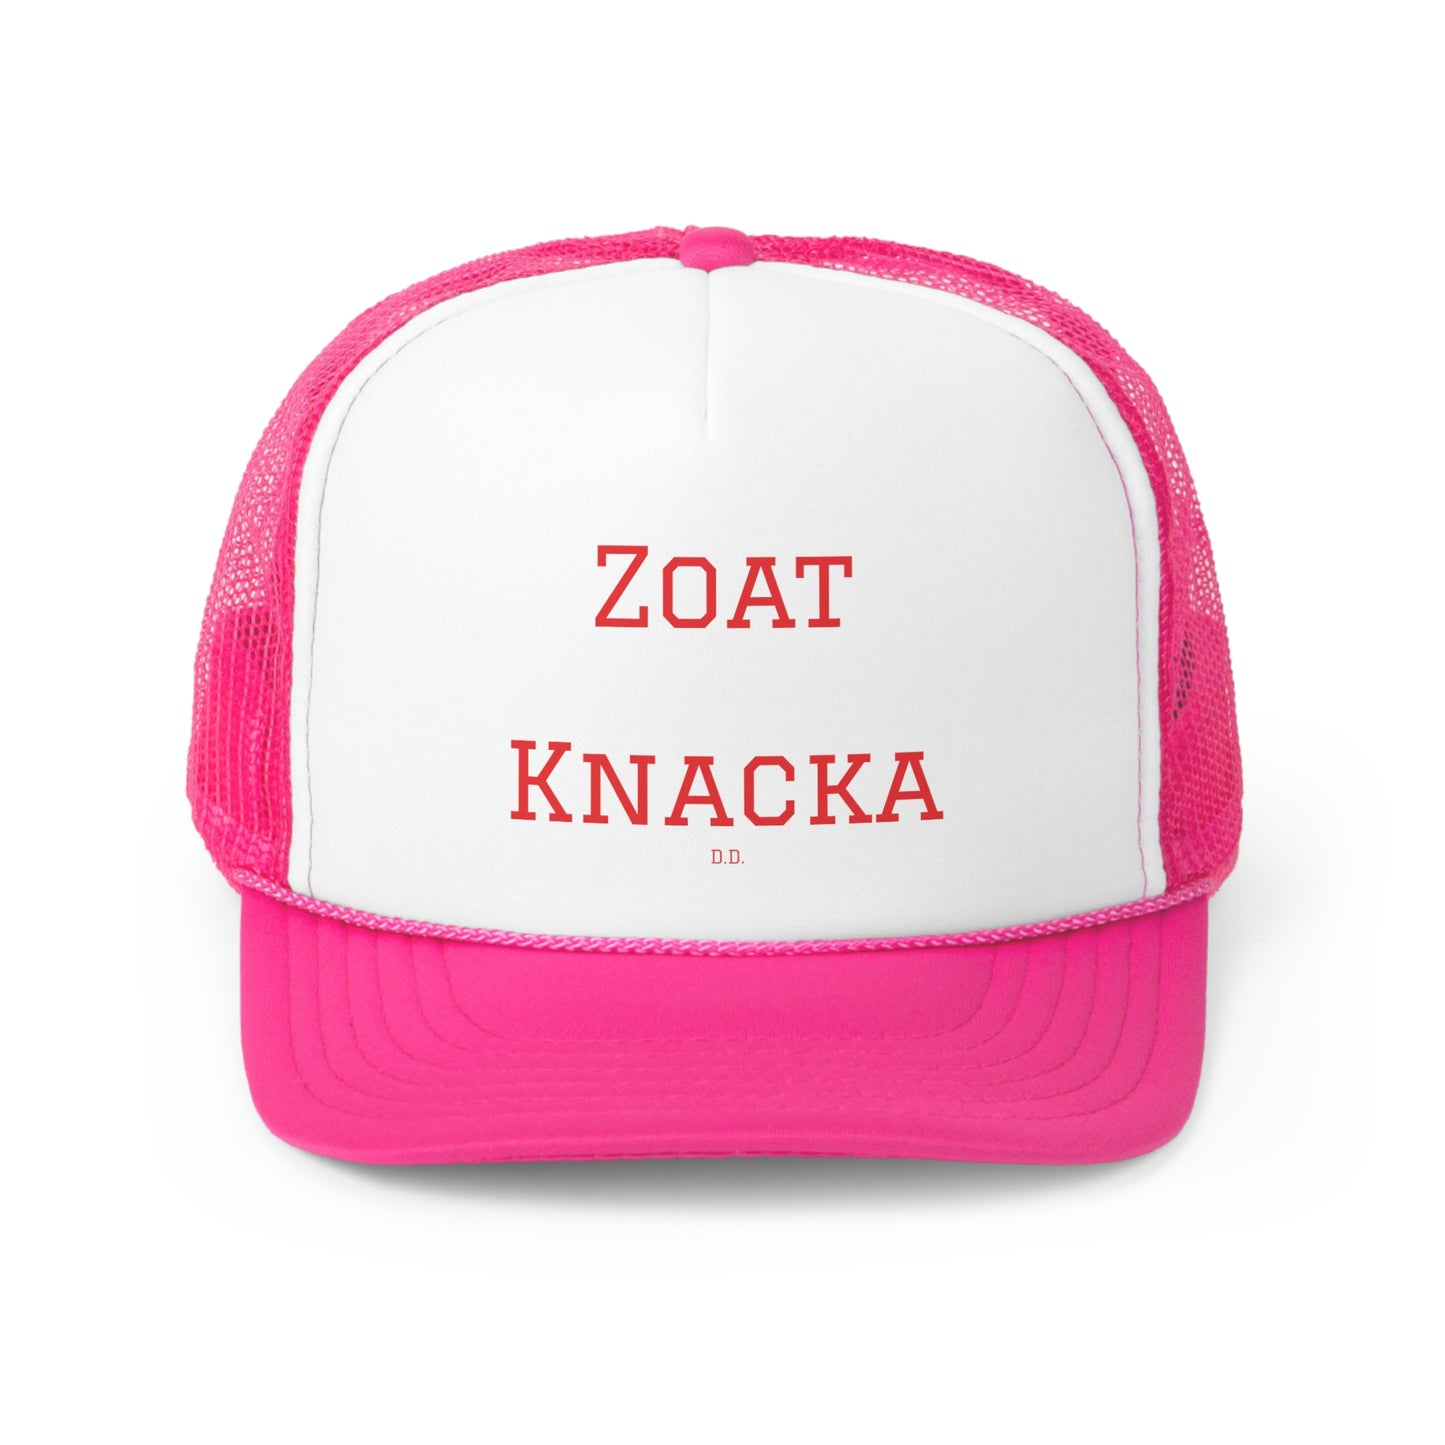 Zoat Knacka Trucker Caps